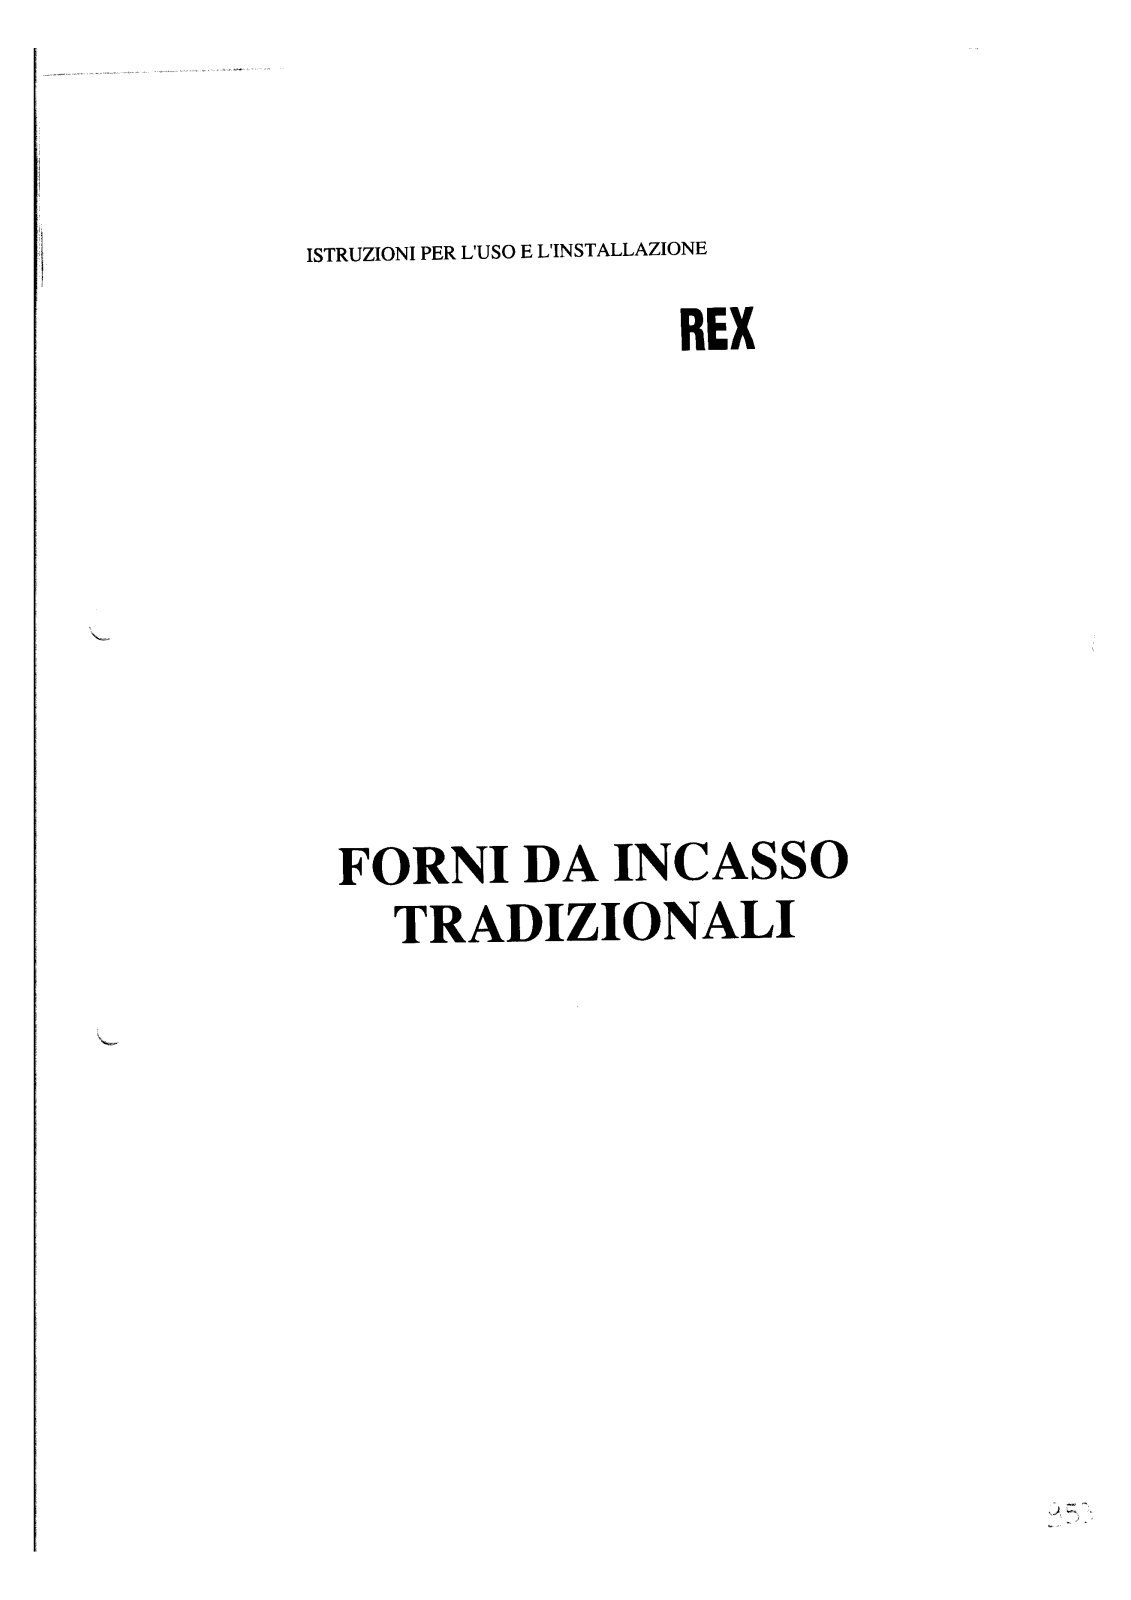 Rex FNE1N, FNE1B User Manual